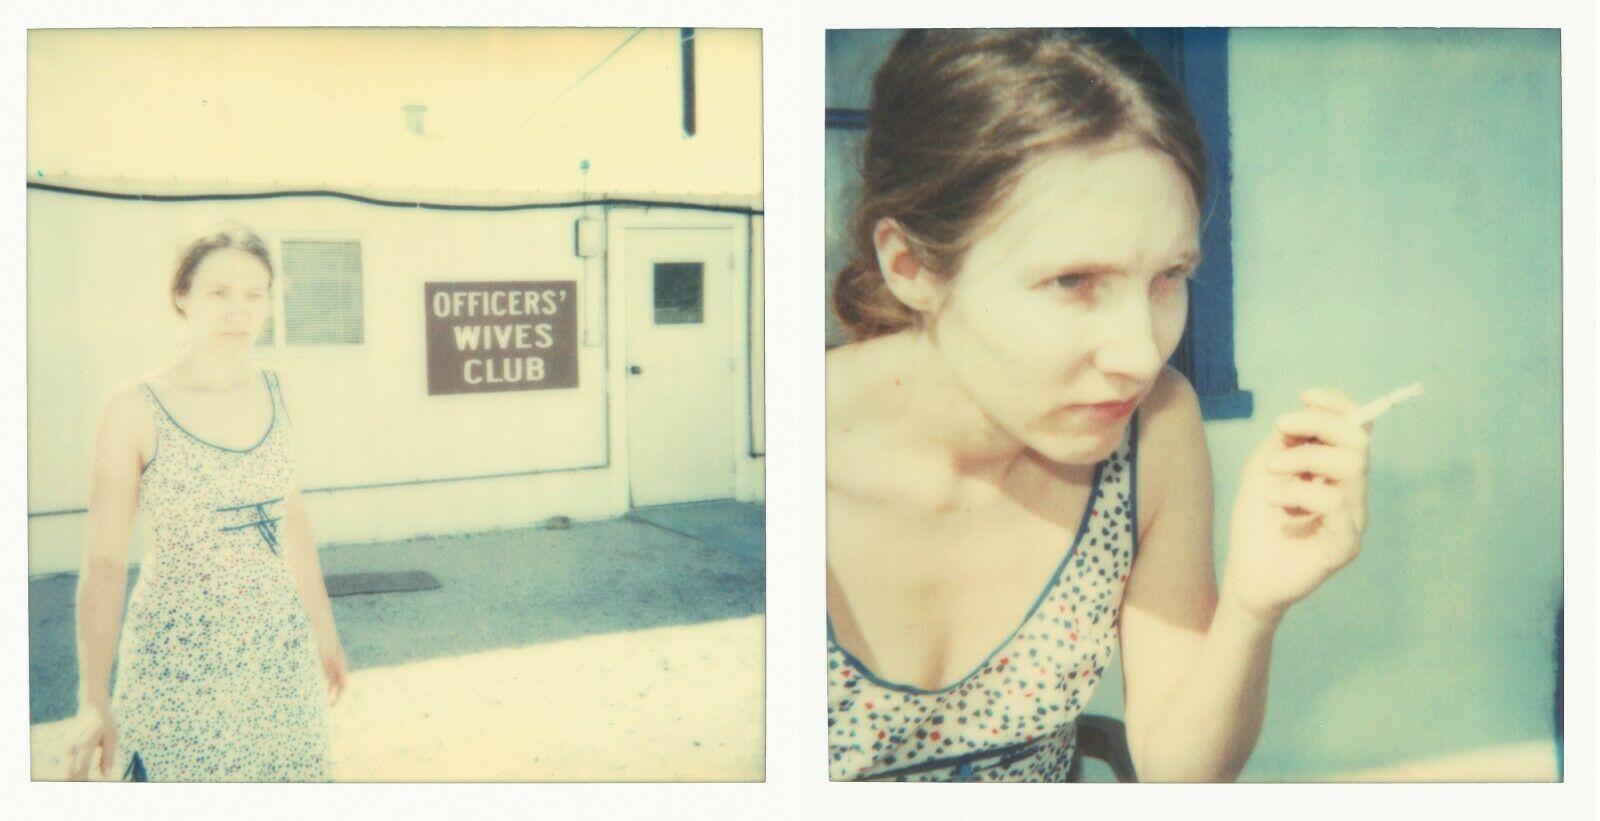 Officer Officer's Wives Club - Zeitgenössisch, 21. Jahrhundert, Polaroid, figürlich